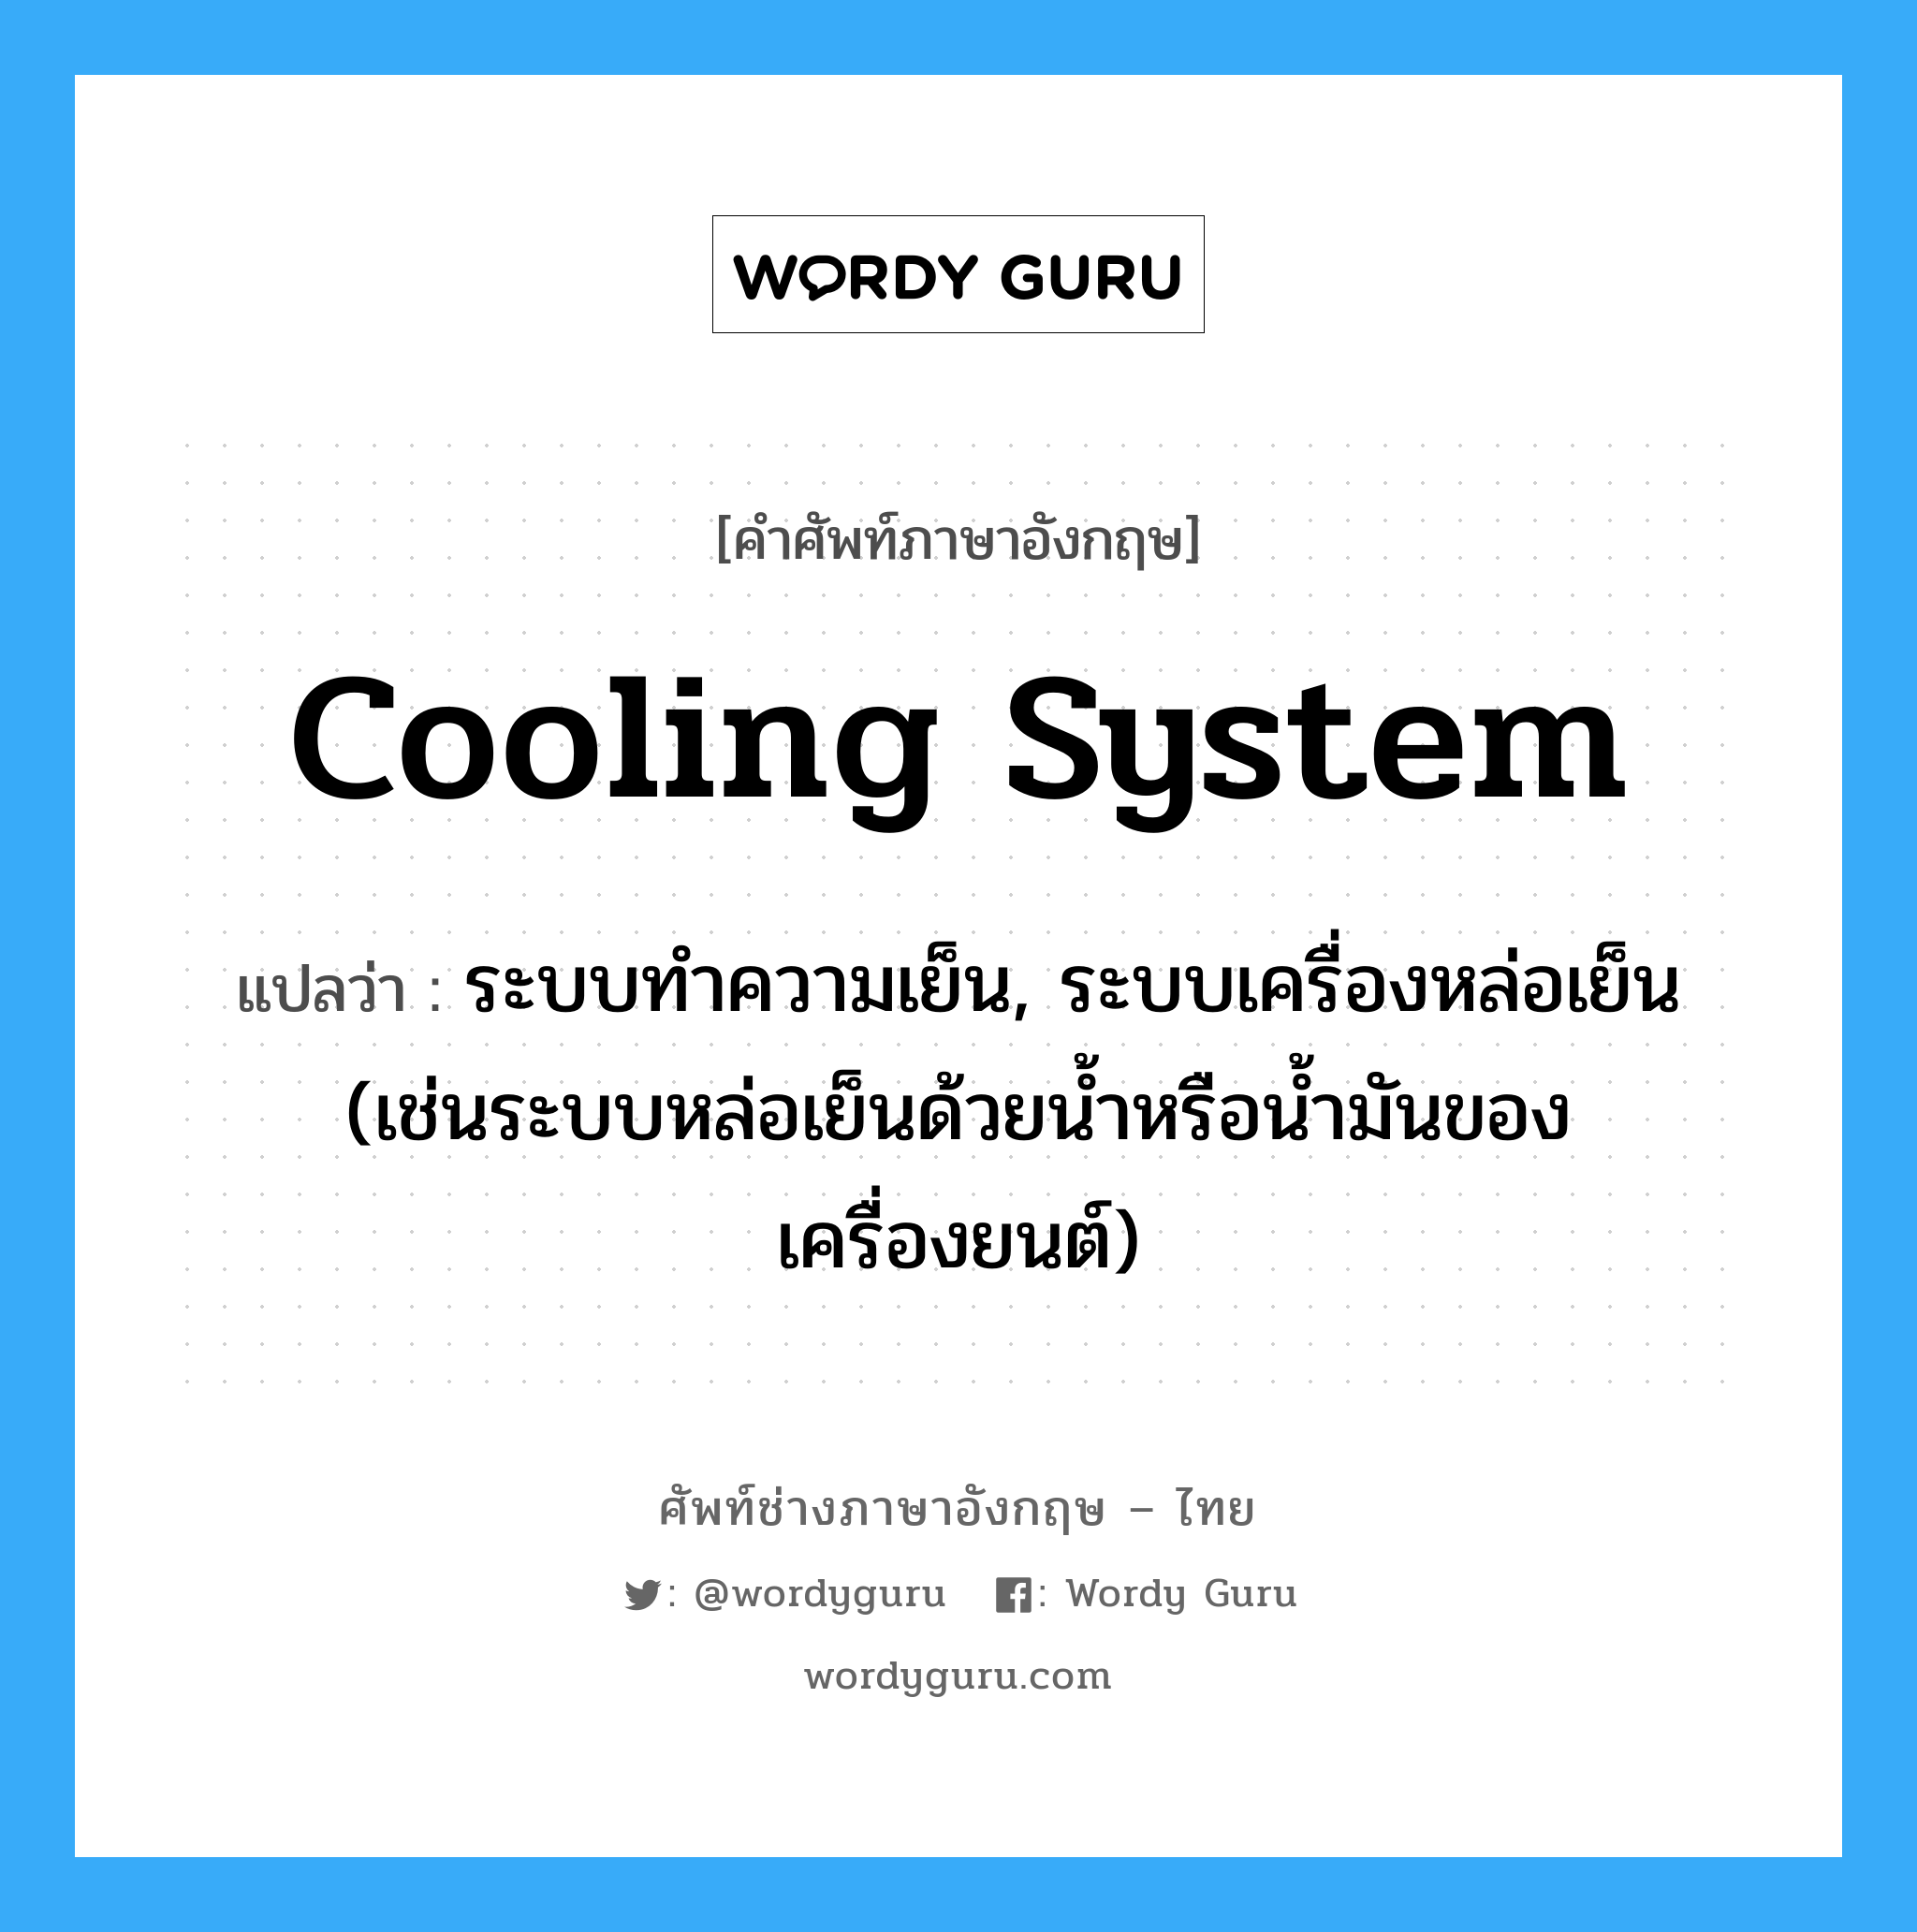 cooling system แปลว่า?, คำศัพท์ช่างภาษาอังกฤษ - ไทย cooling system คำศัพท์ภาษาอังกฤษ cooling system แปลว่า ระบบทำความเย็น, ระบบเครื่องหล่อเย็น (เช่นระบบหล่อเย็นด้วยน้ำหรือน้ำมันของเครื่องยนต์)